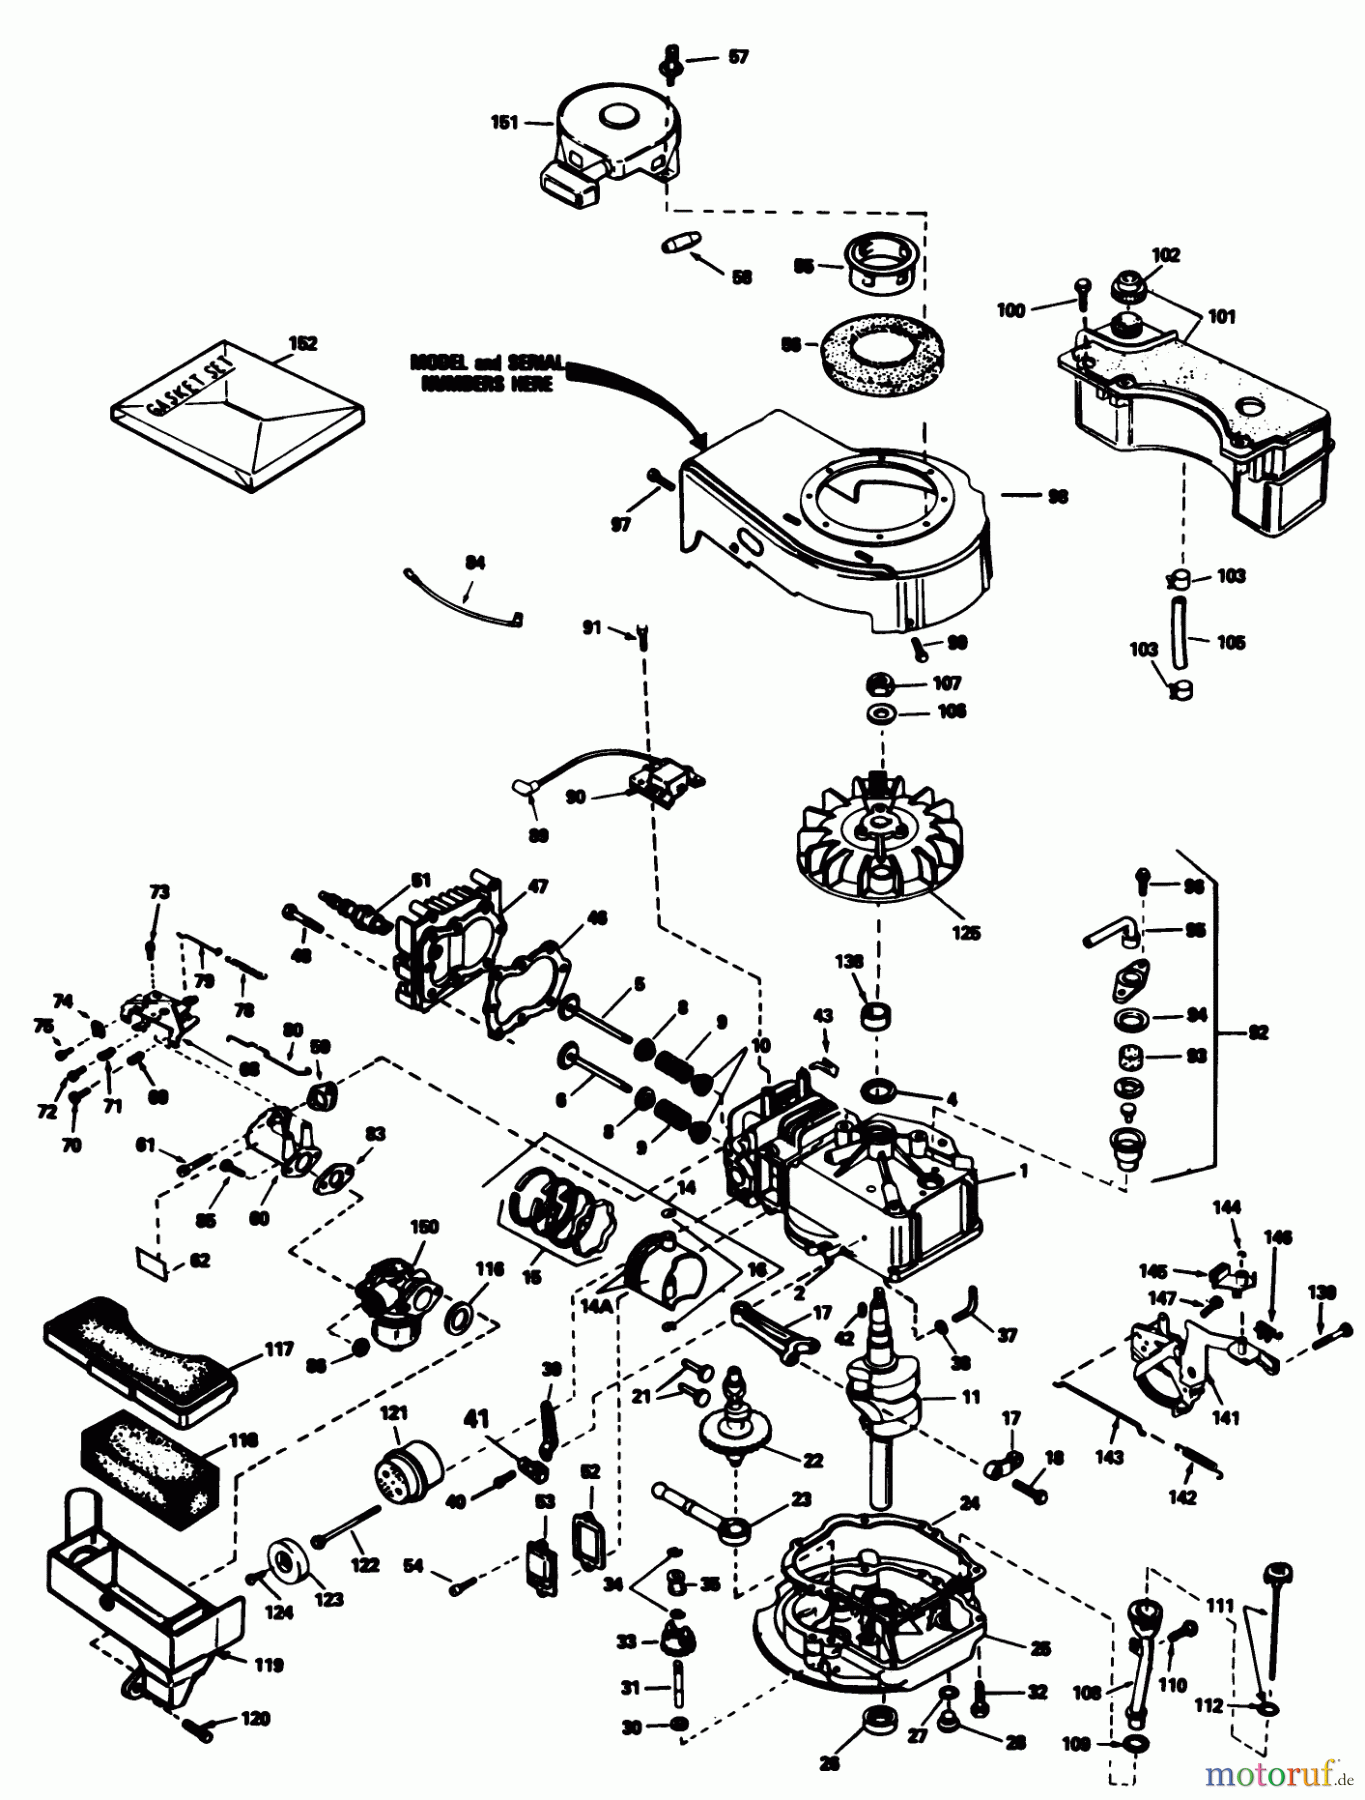  Toro Neu Mowers, Walk-Behind Seite 1 20675 - Toro Lawnmower, 1985 (5000001-5999999) ENGINE TECUMSEH MODEL NO. TVS90-43228D